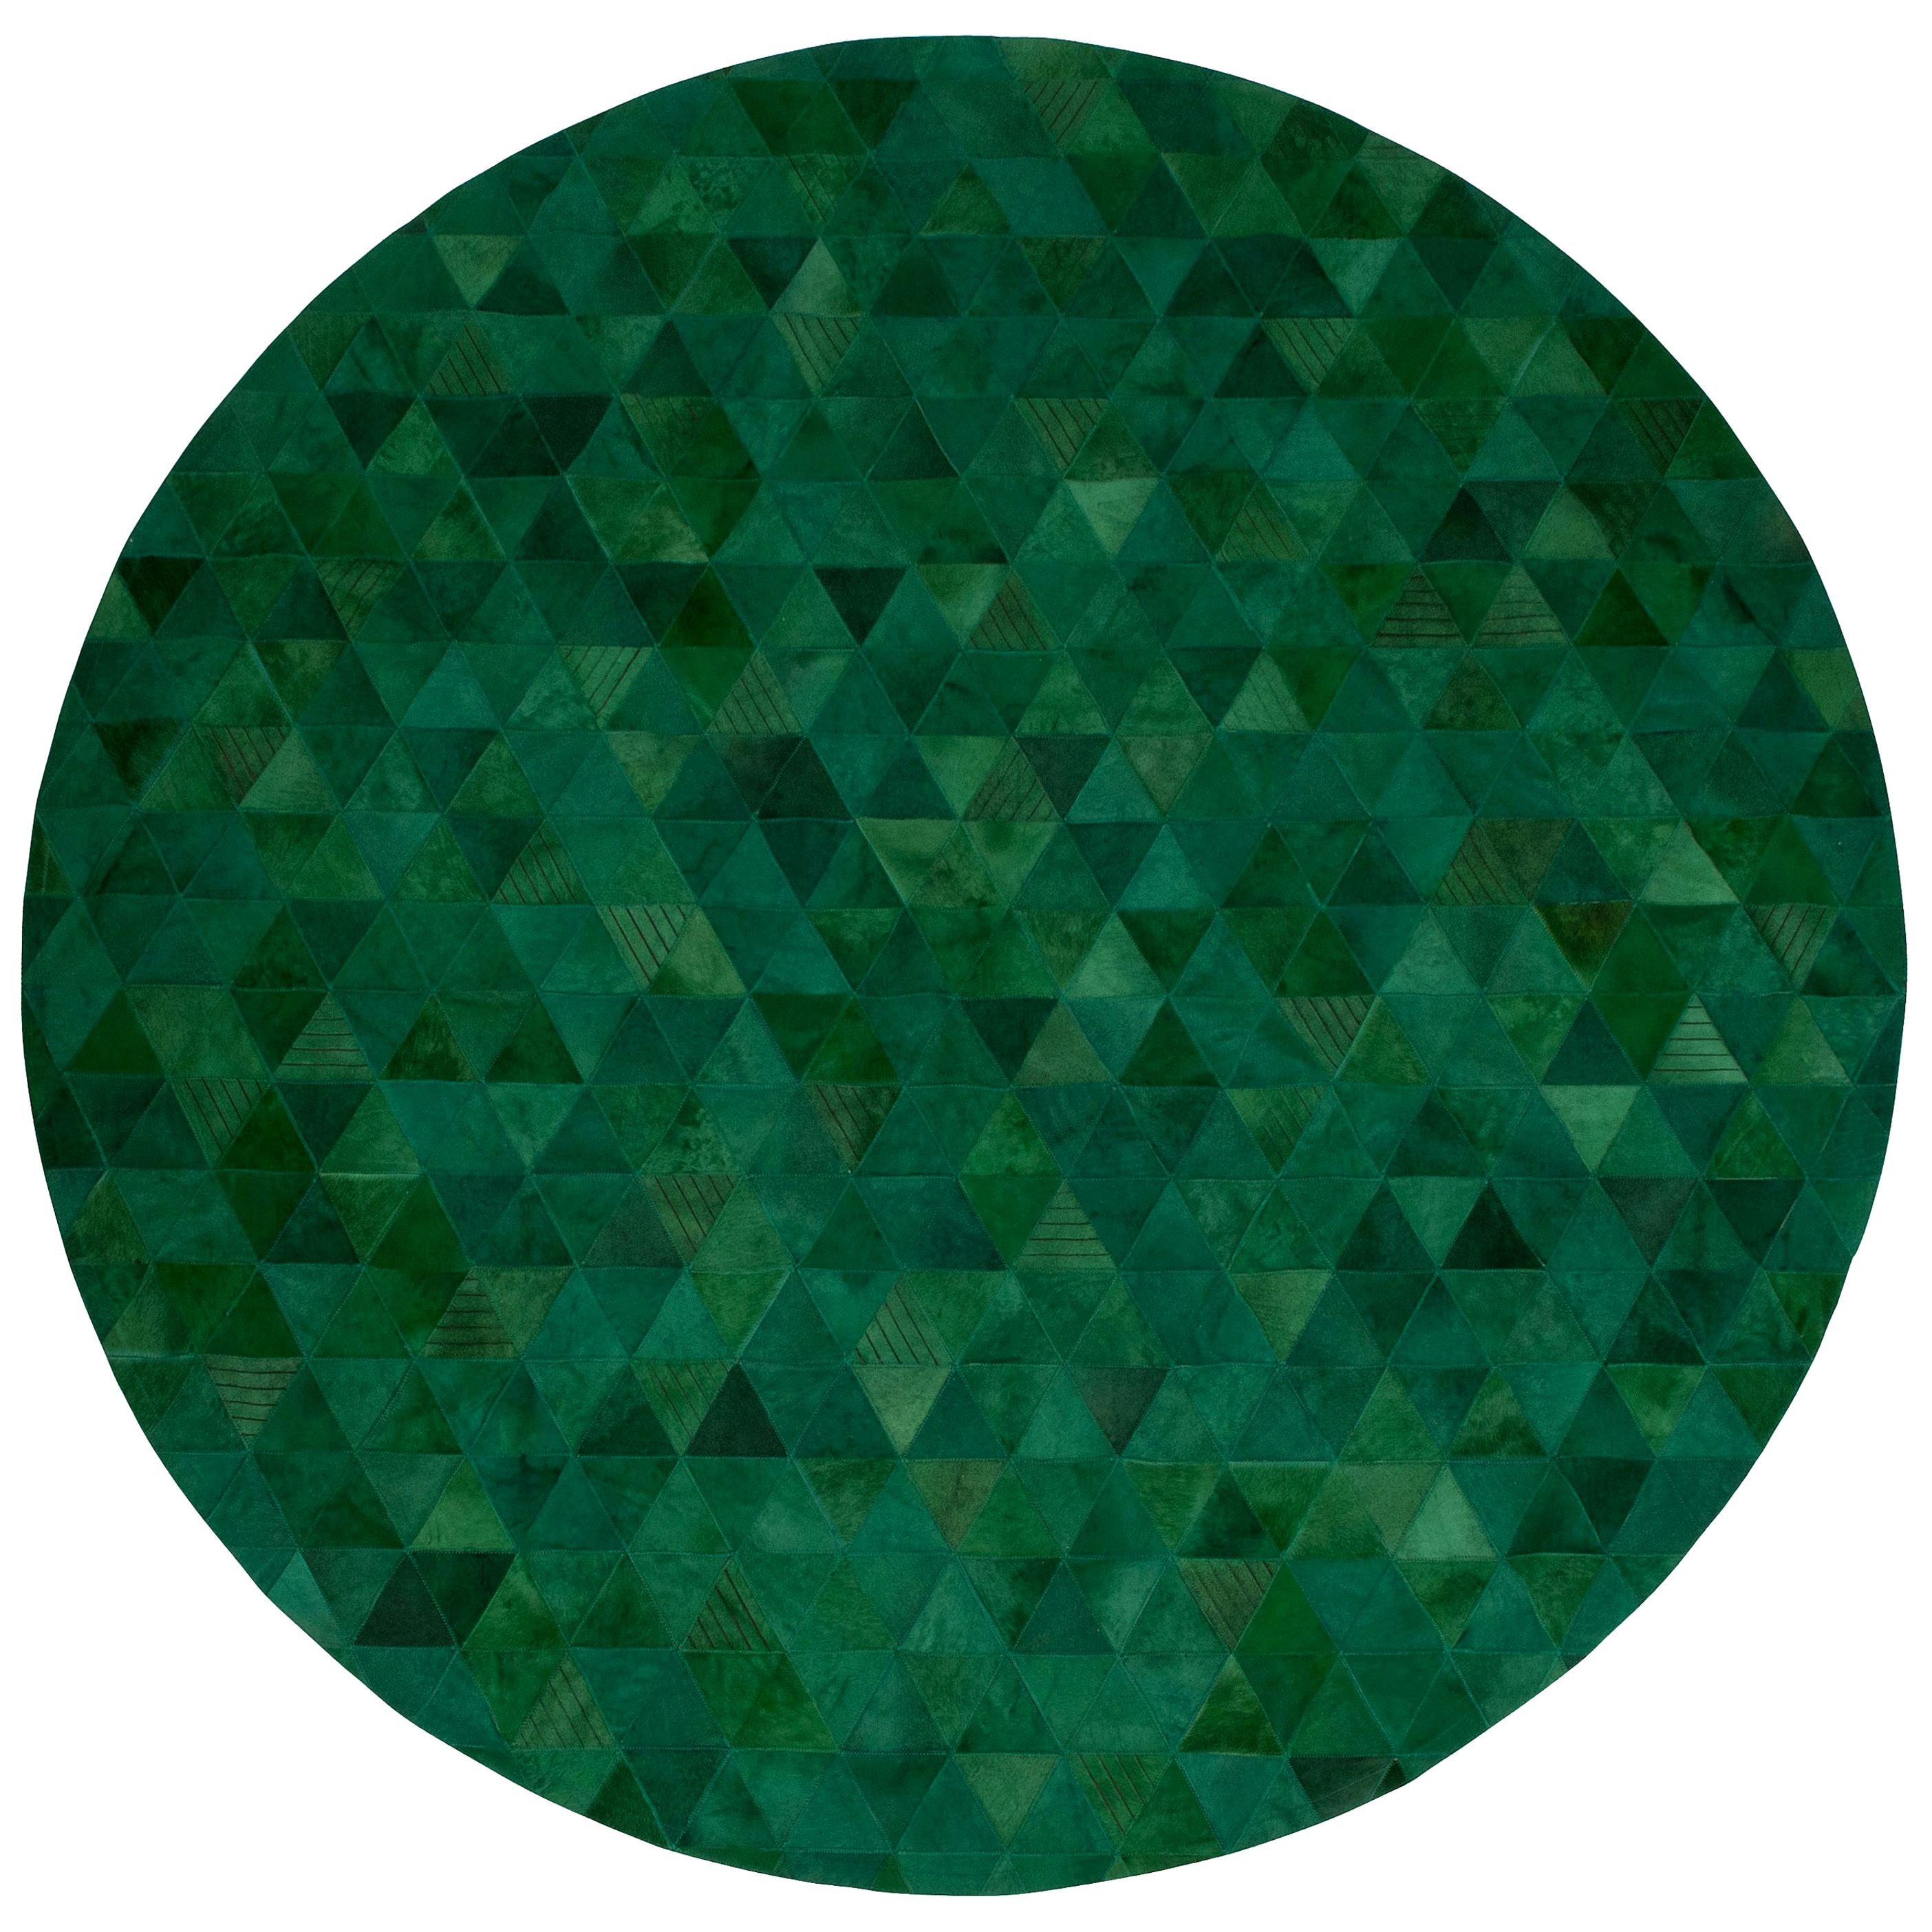 Grand tapis rond personnalisable en cuir de vache Trilogia Emerald vert bijou